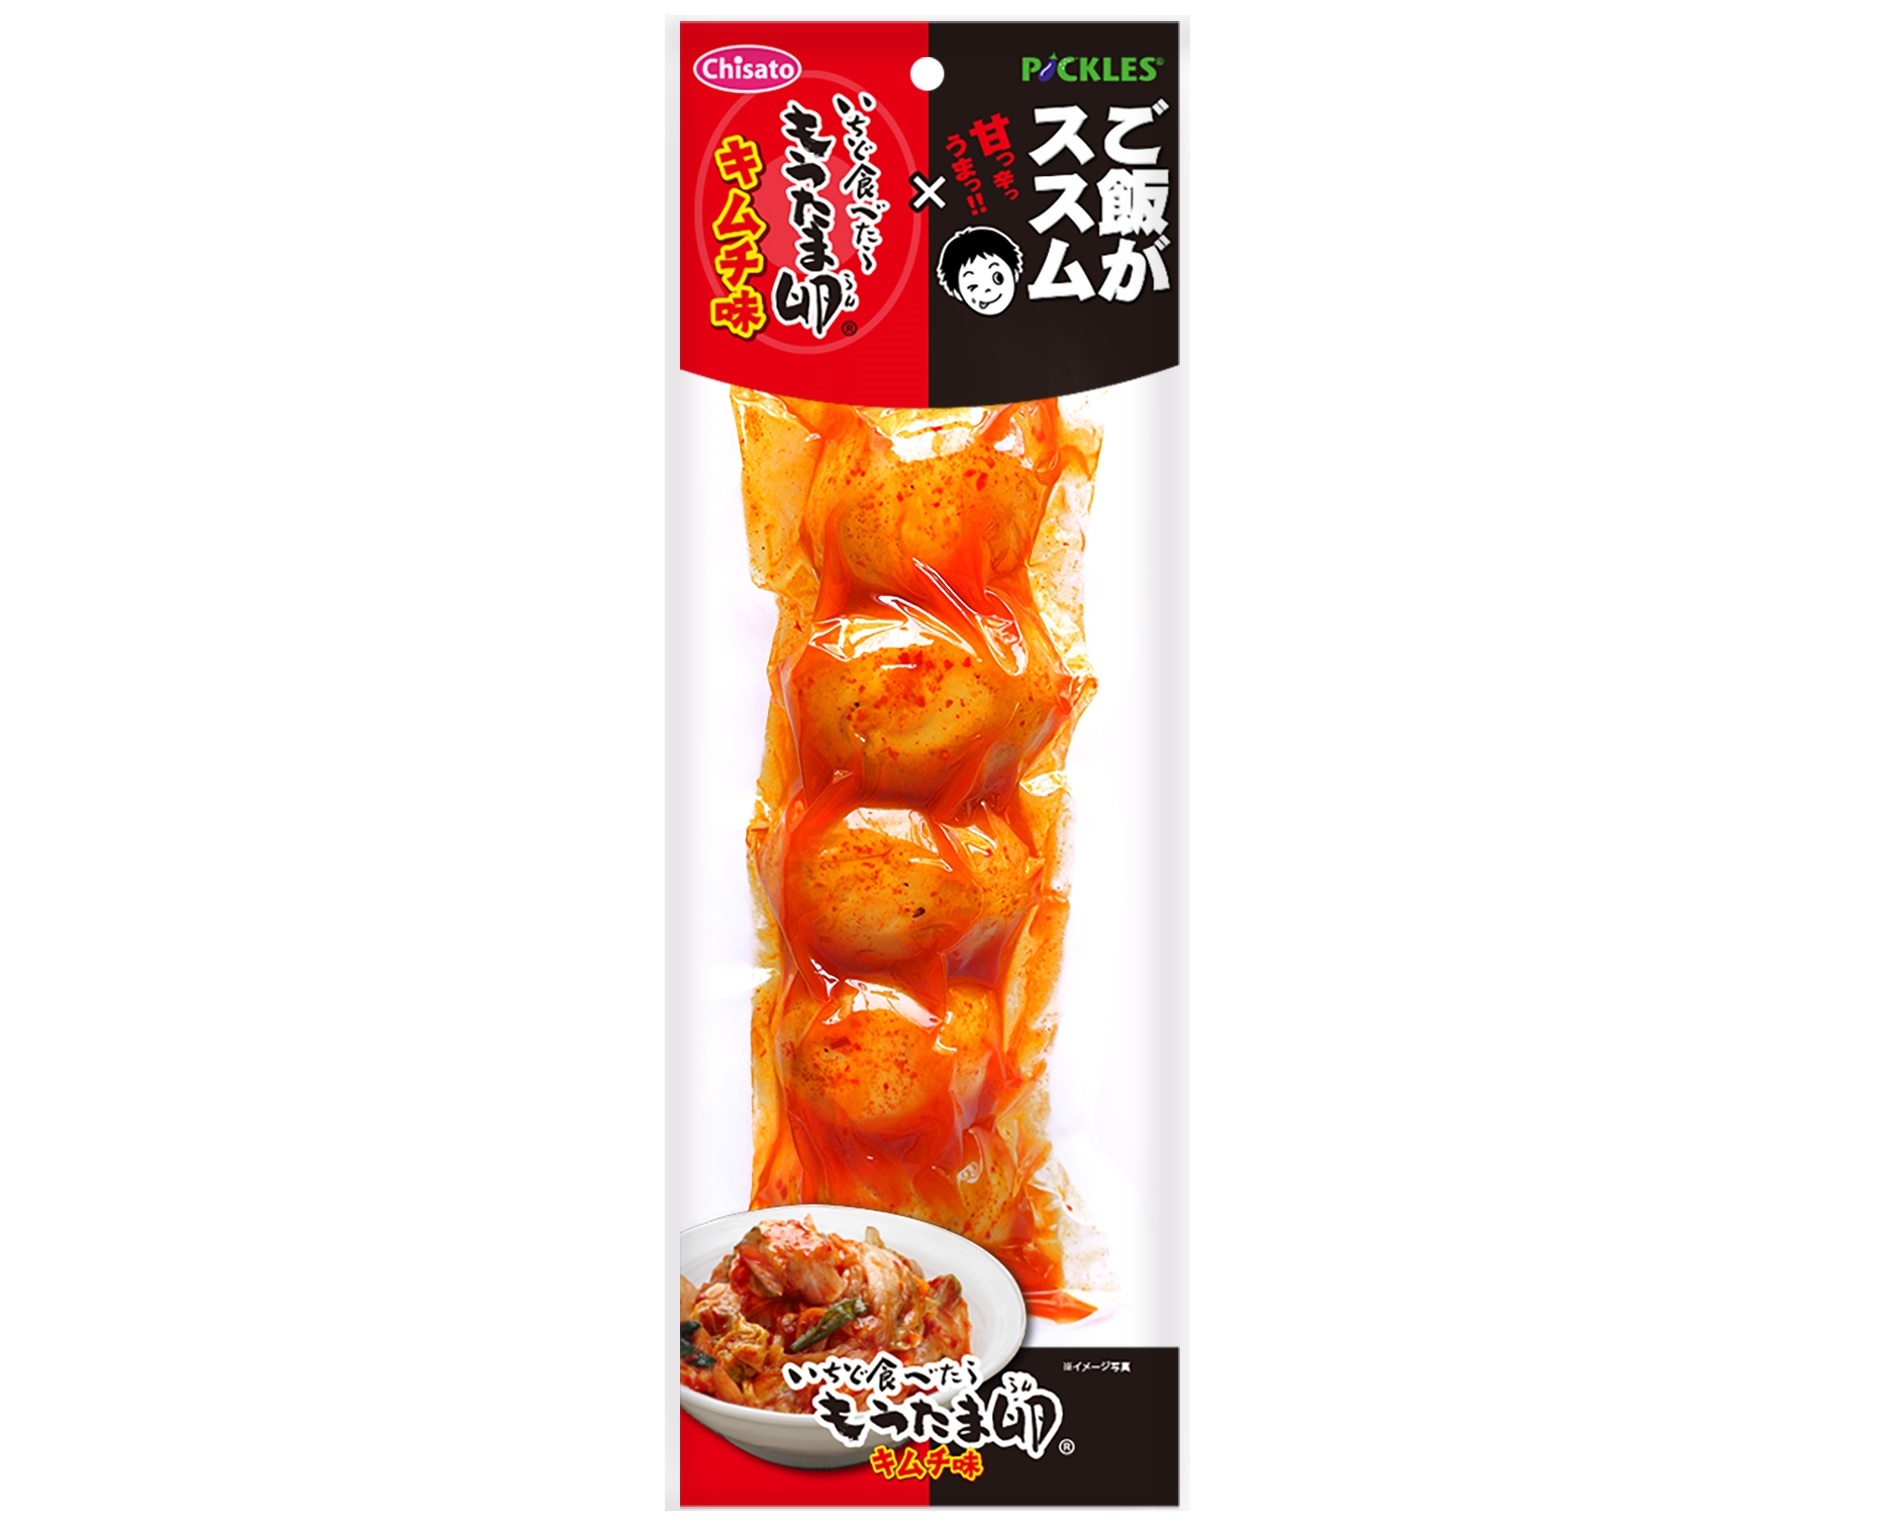 「ご飯がススムキムチ」×「いちど食べたらもうたま卵」
多くの人に愛される商品同士がコラボして9/5に発売！